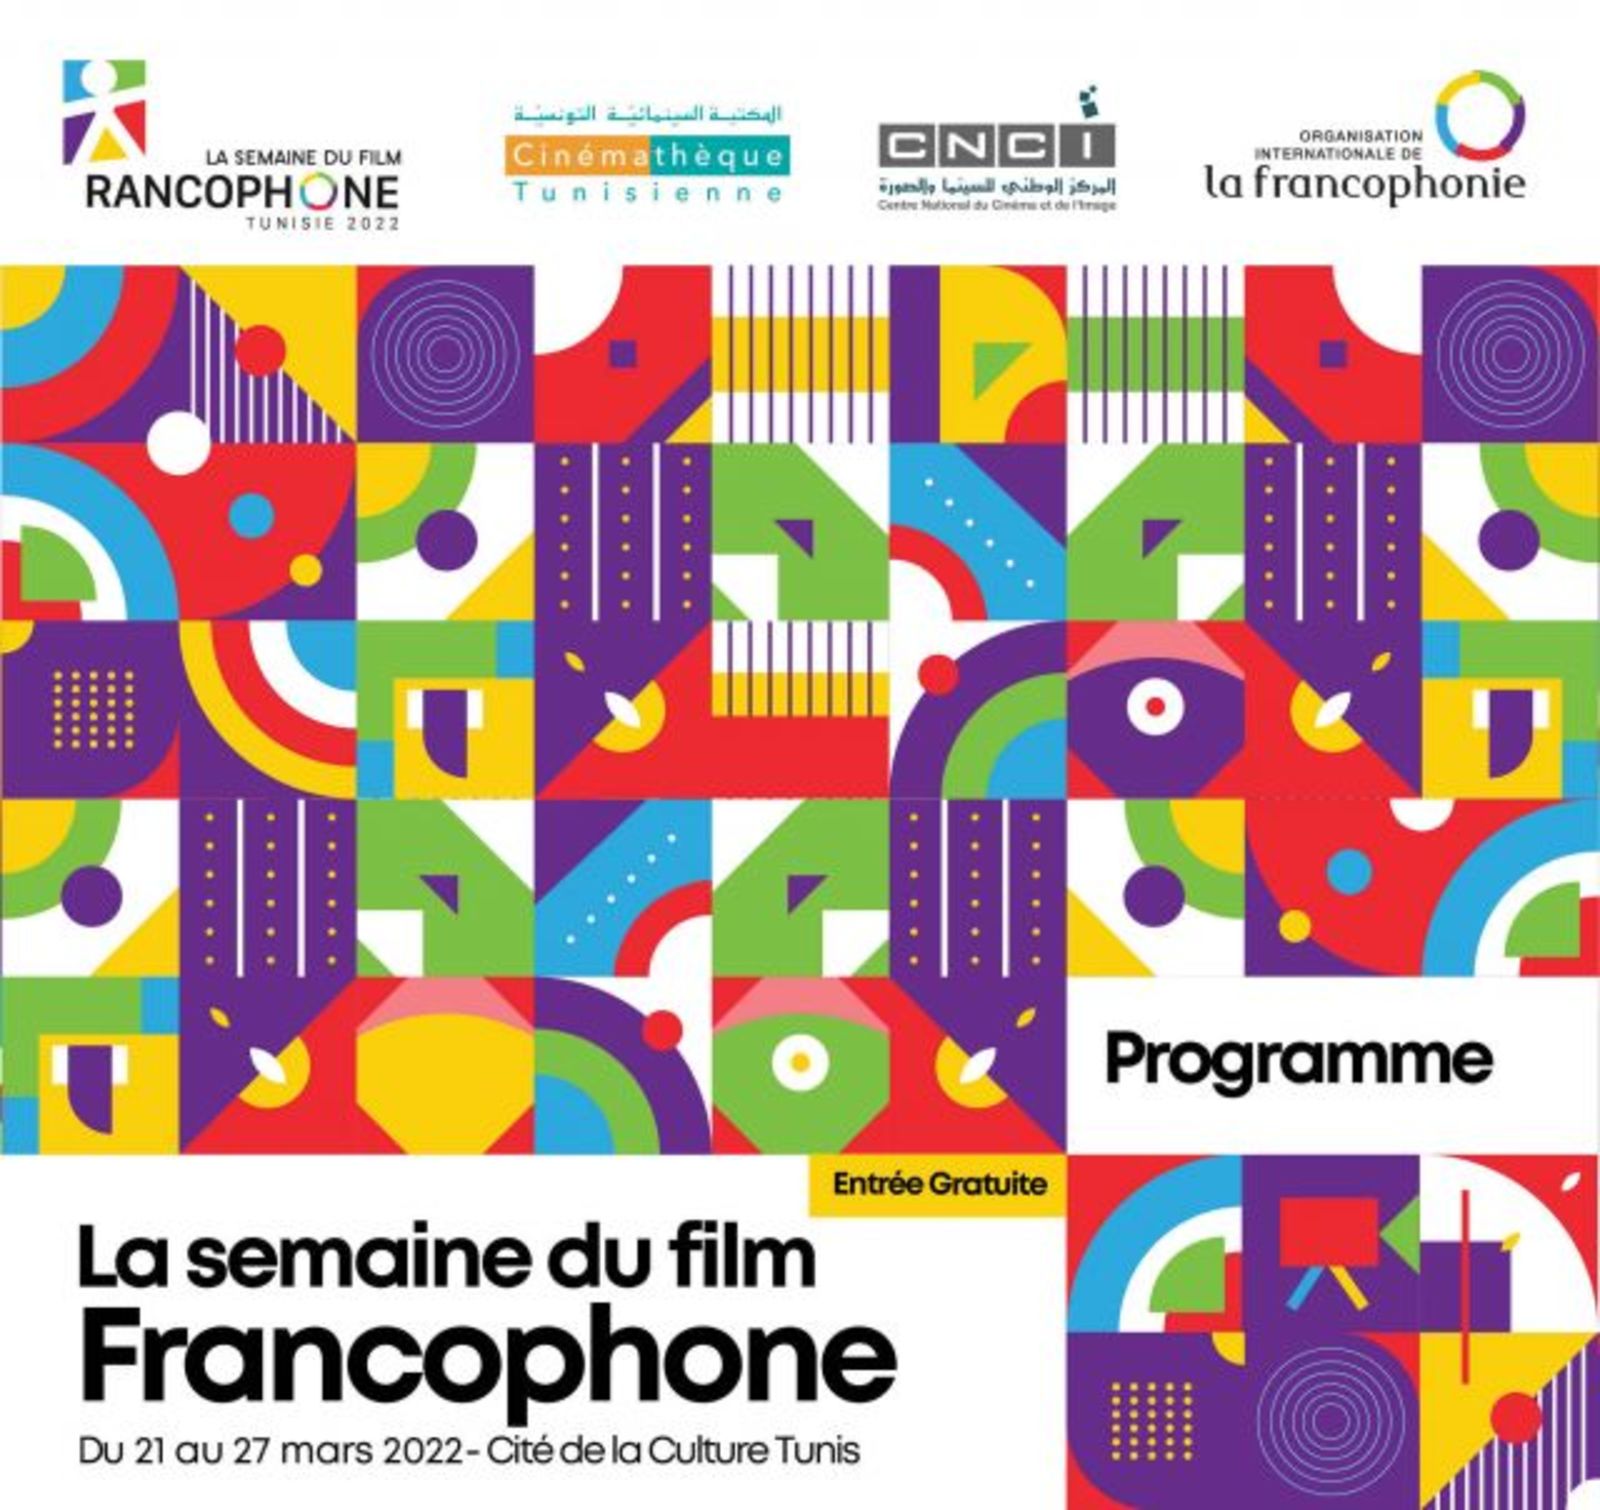 Българско участие в Седмицата на франкофонското кино в Тунис 